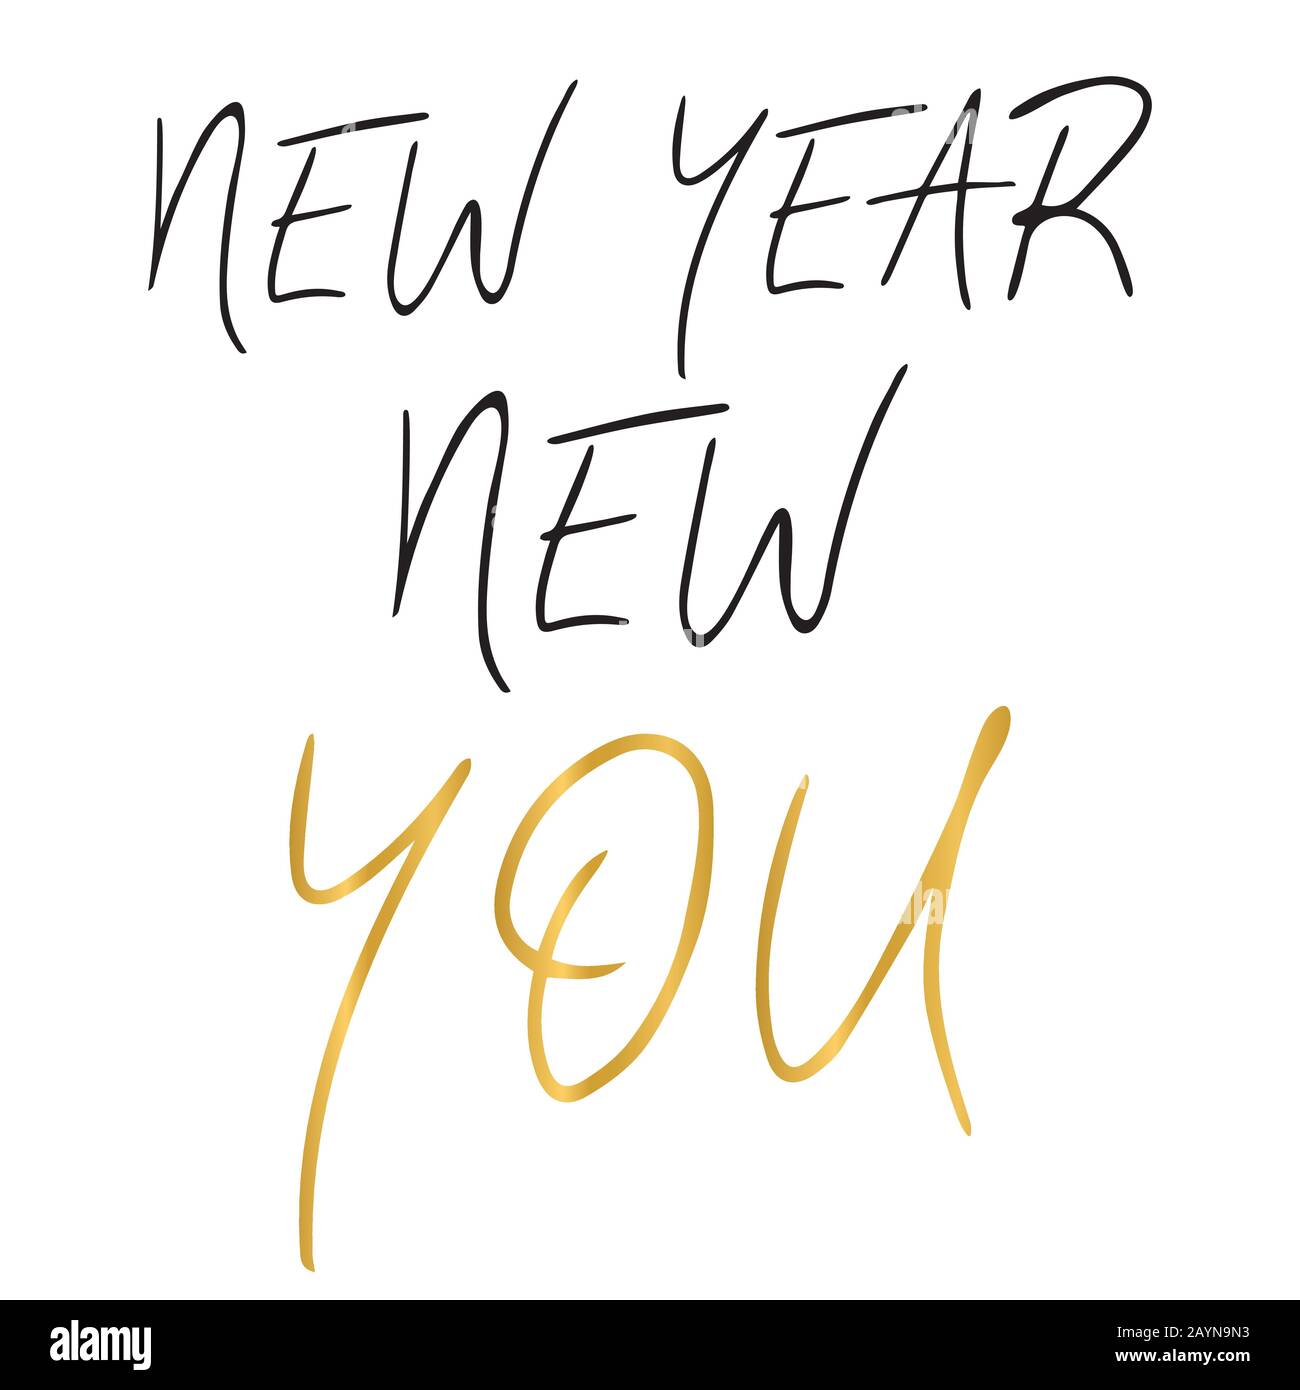 Neues Jahr Neues einfaches handgeschriebenes Zitat. Motivierender und inspirierender Slogan. Kreative Typografie für Ihr Design. Schwarz, Gold und Weiß. Stock Vektor